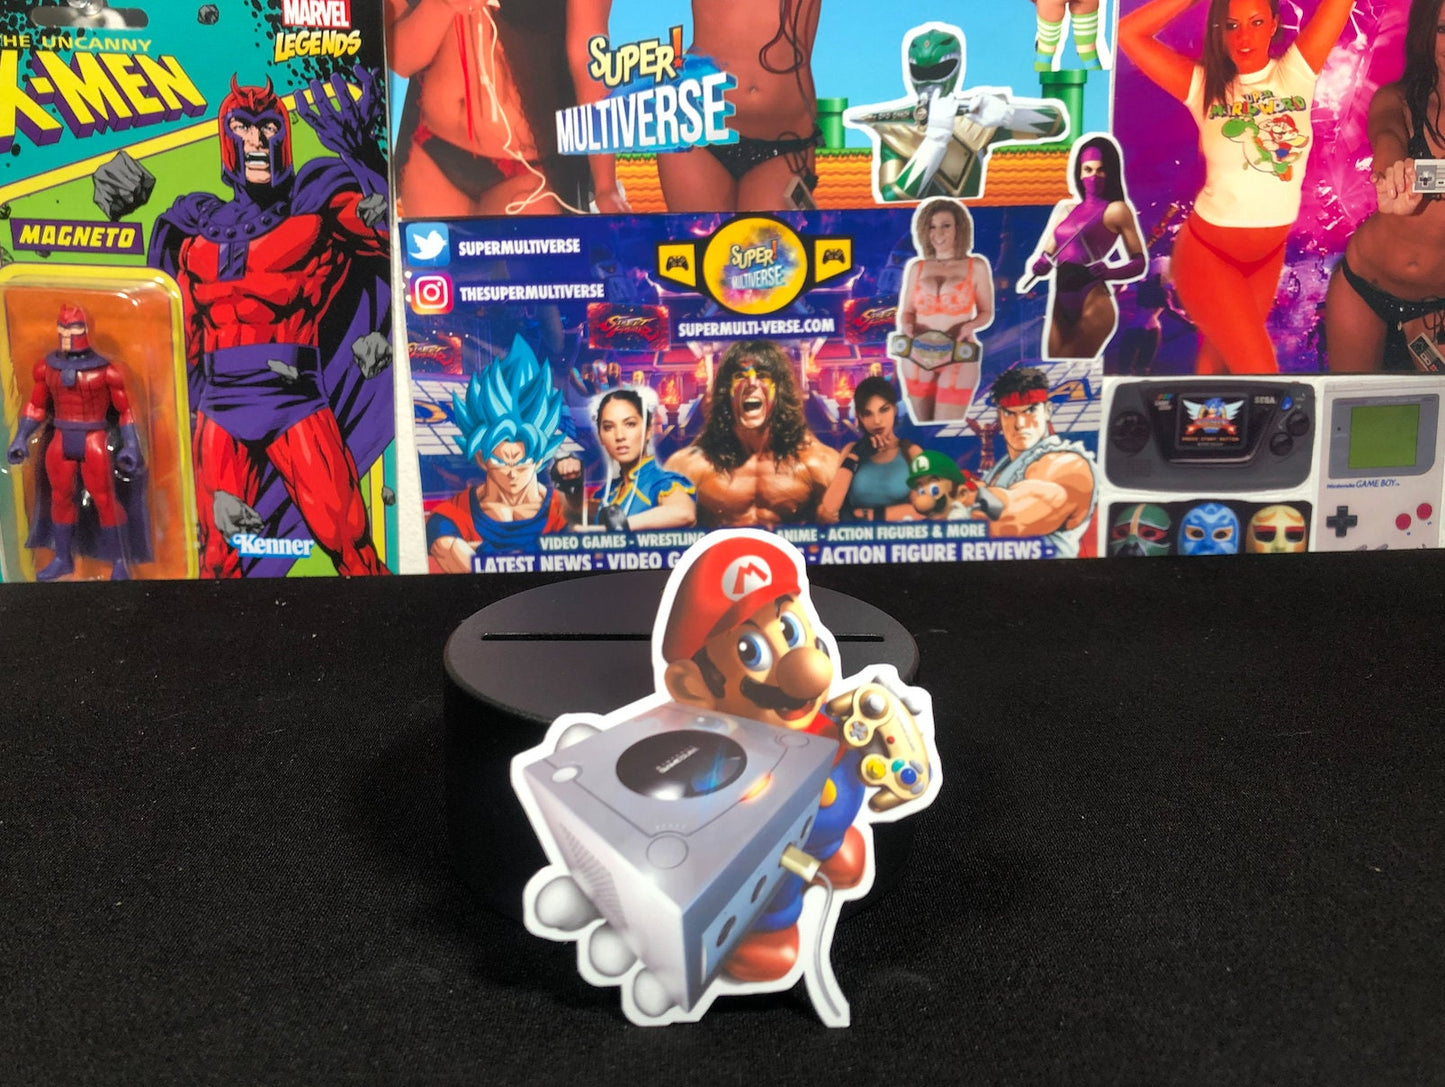 Mario Gamecube Sticker